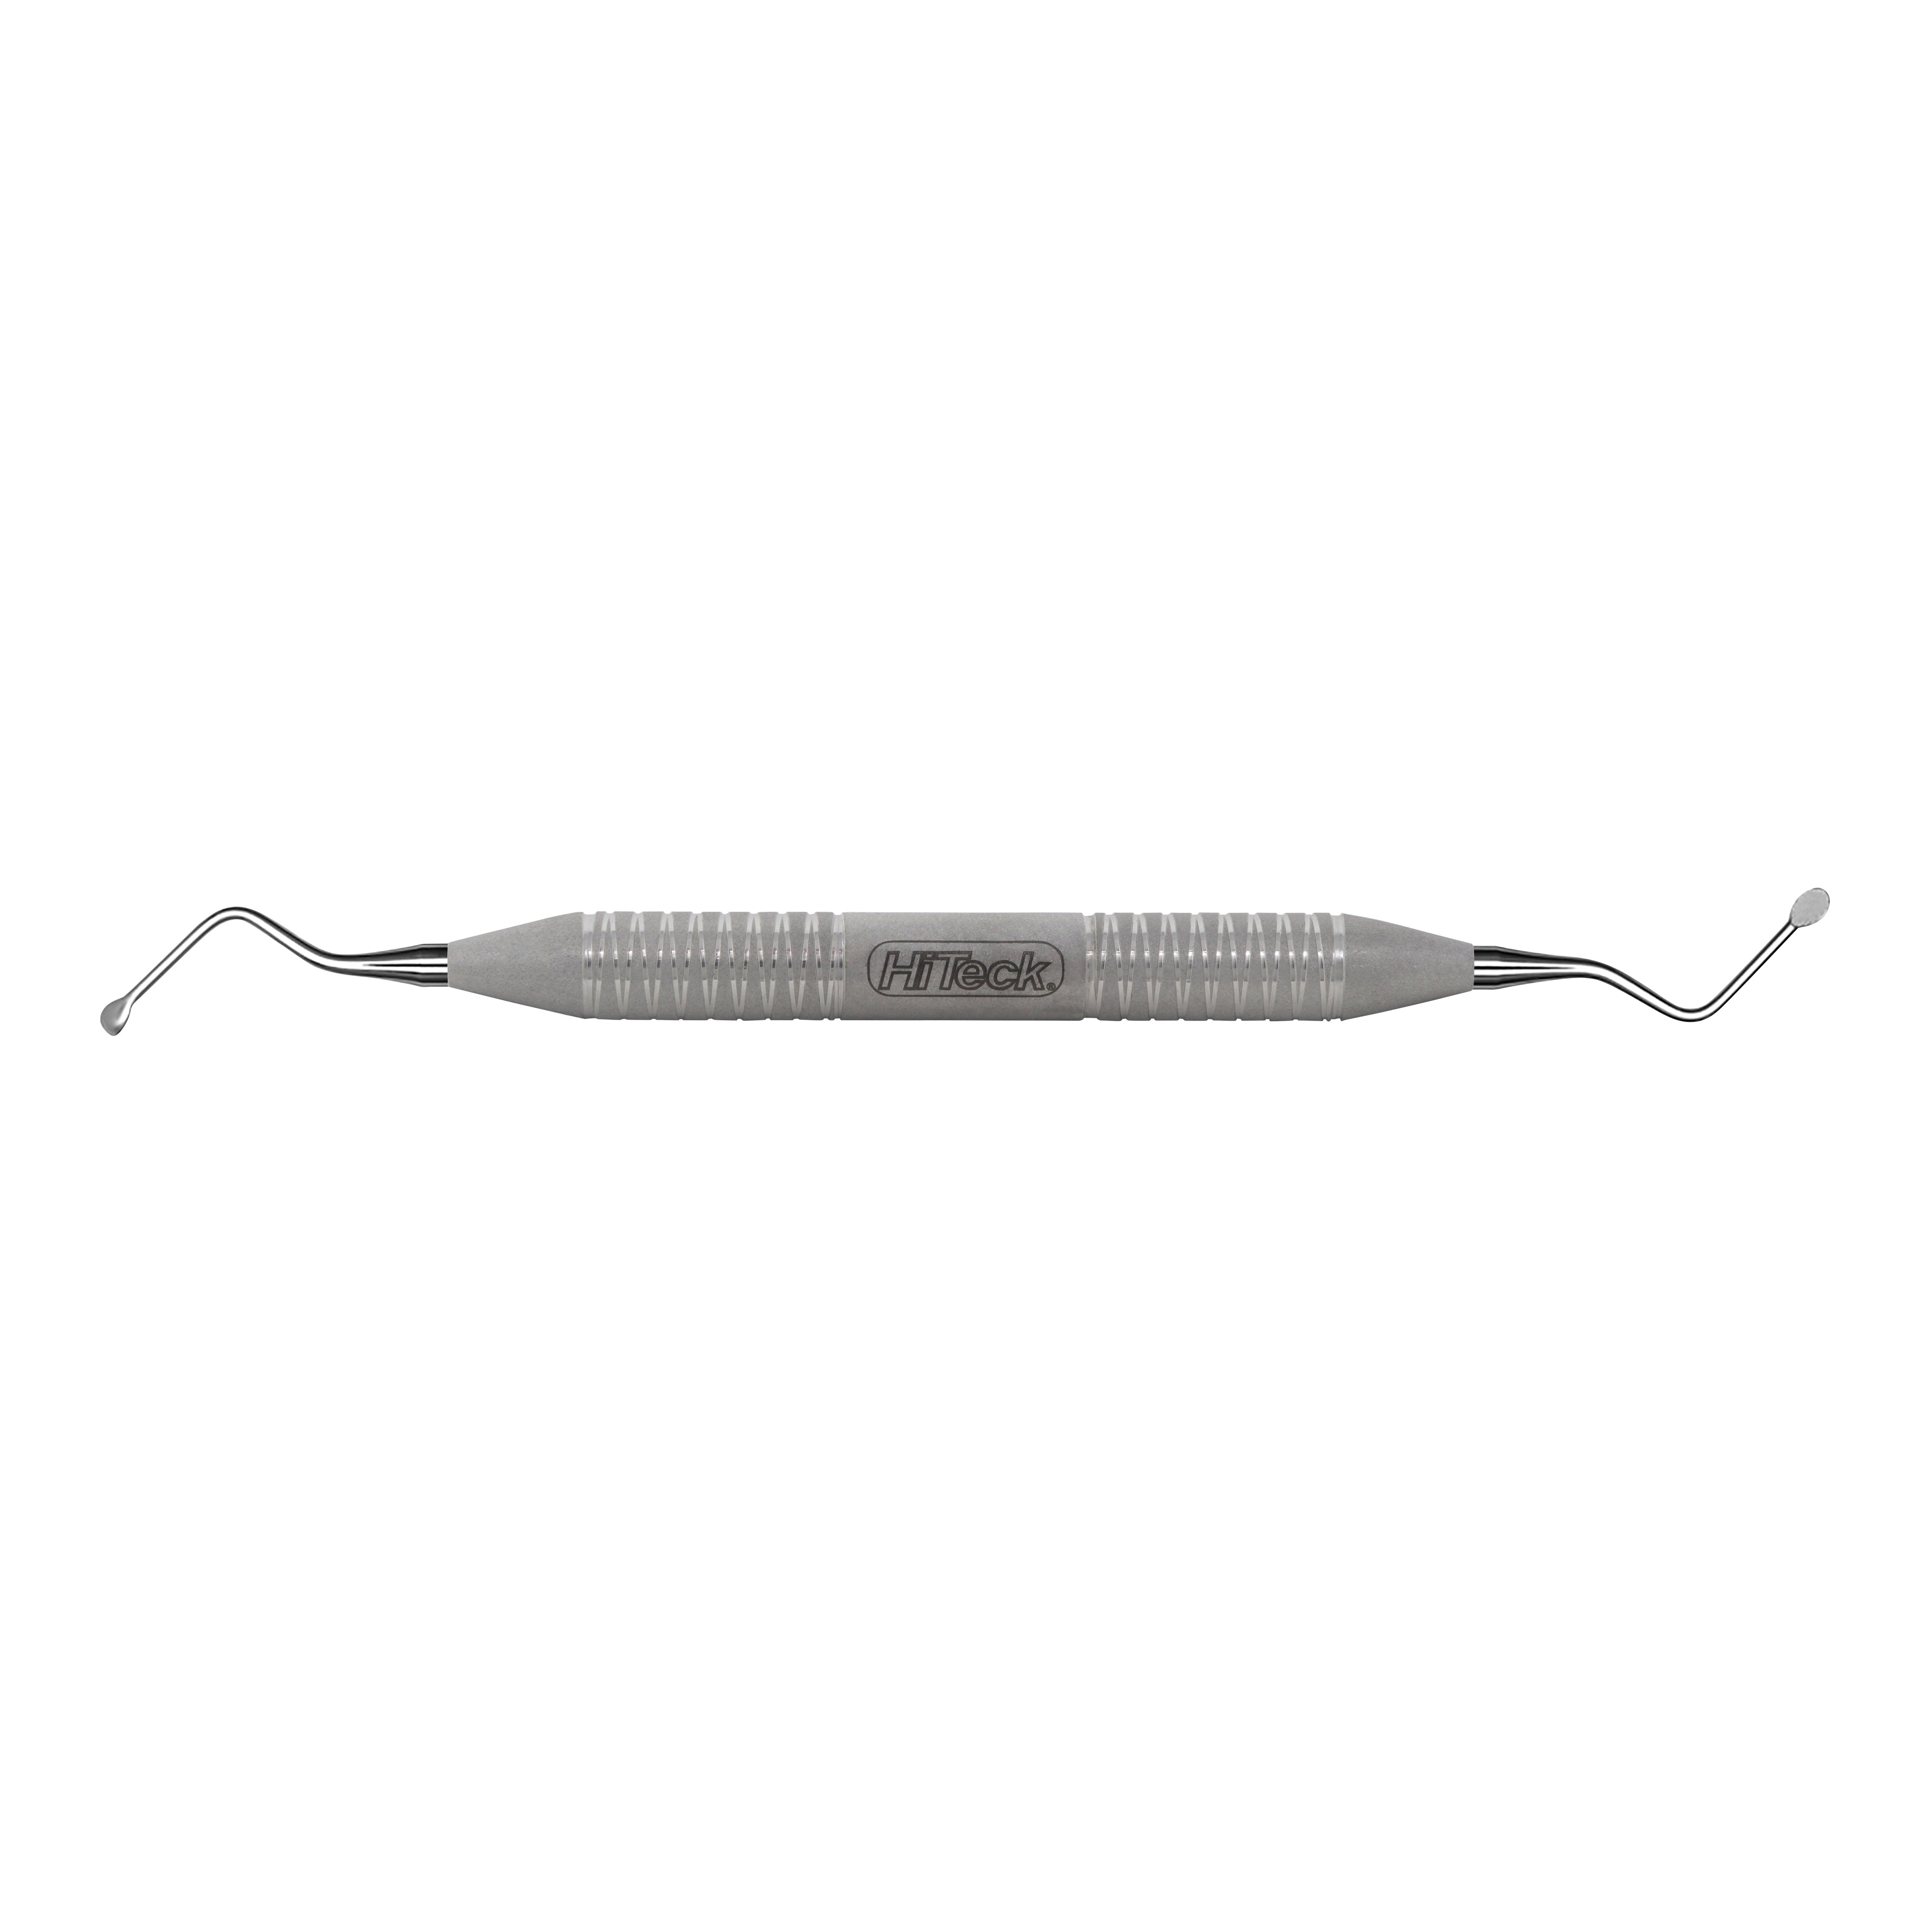 12 Miller Spoon Shape Surgical Curette, 4.2MM - HiTeck Medical Instruments